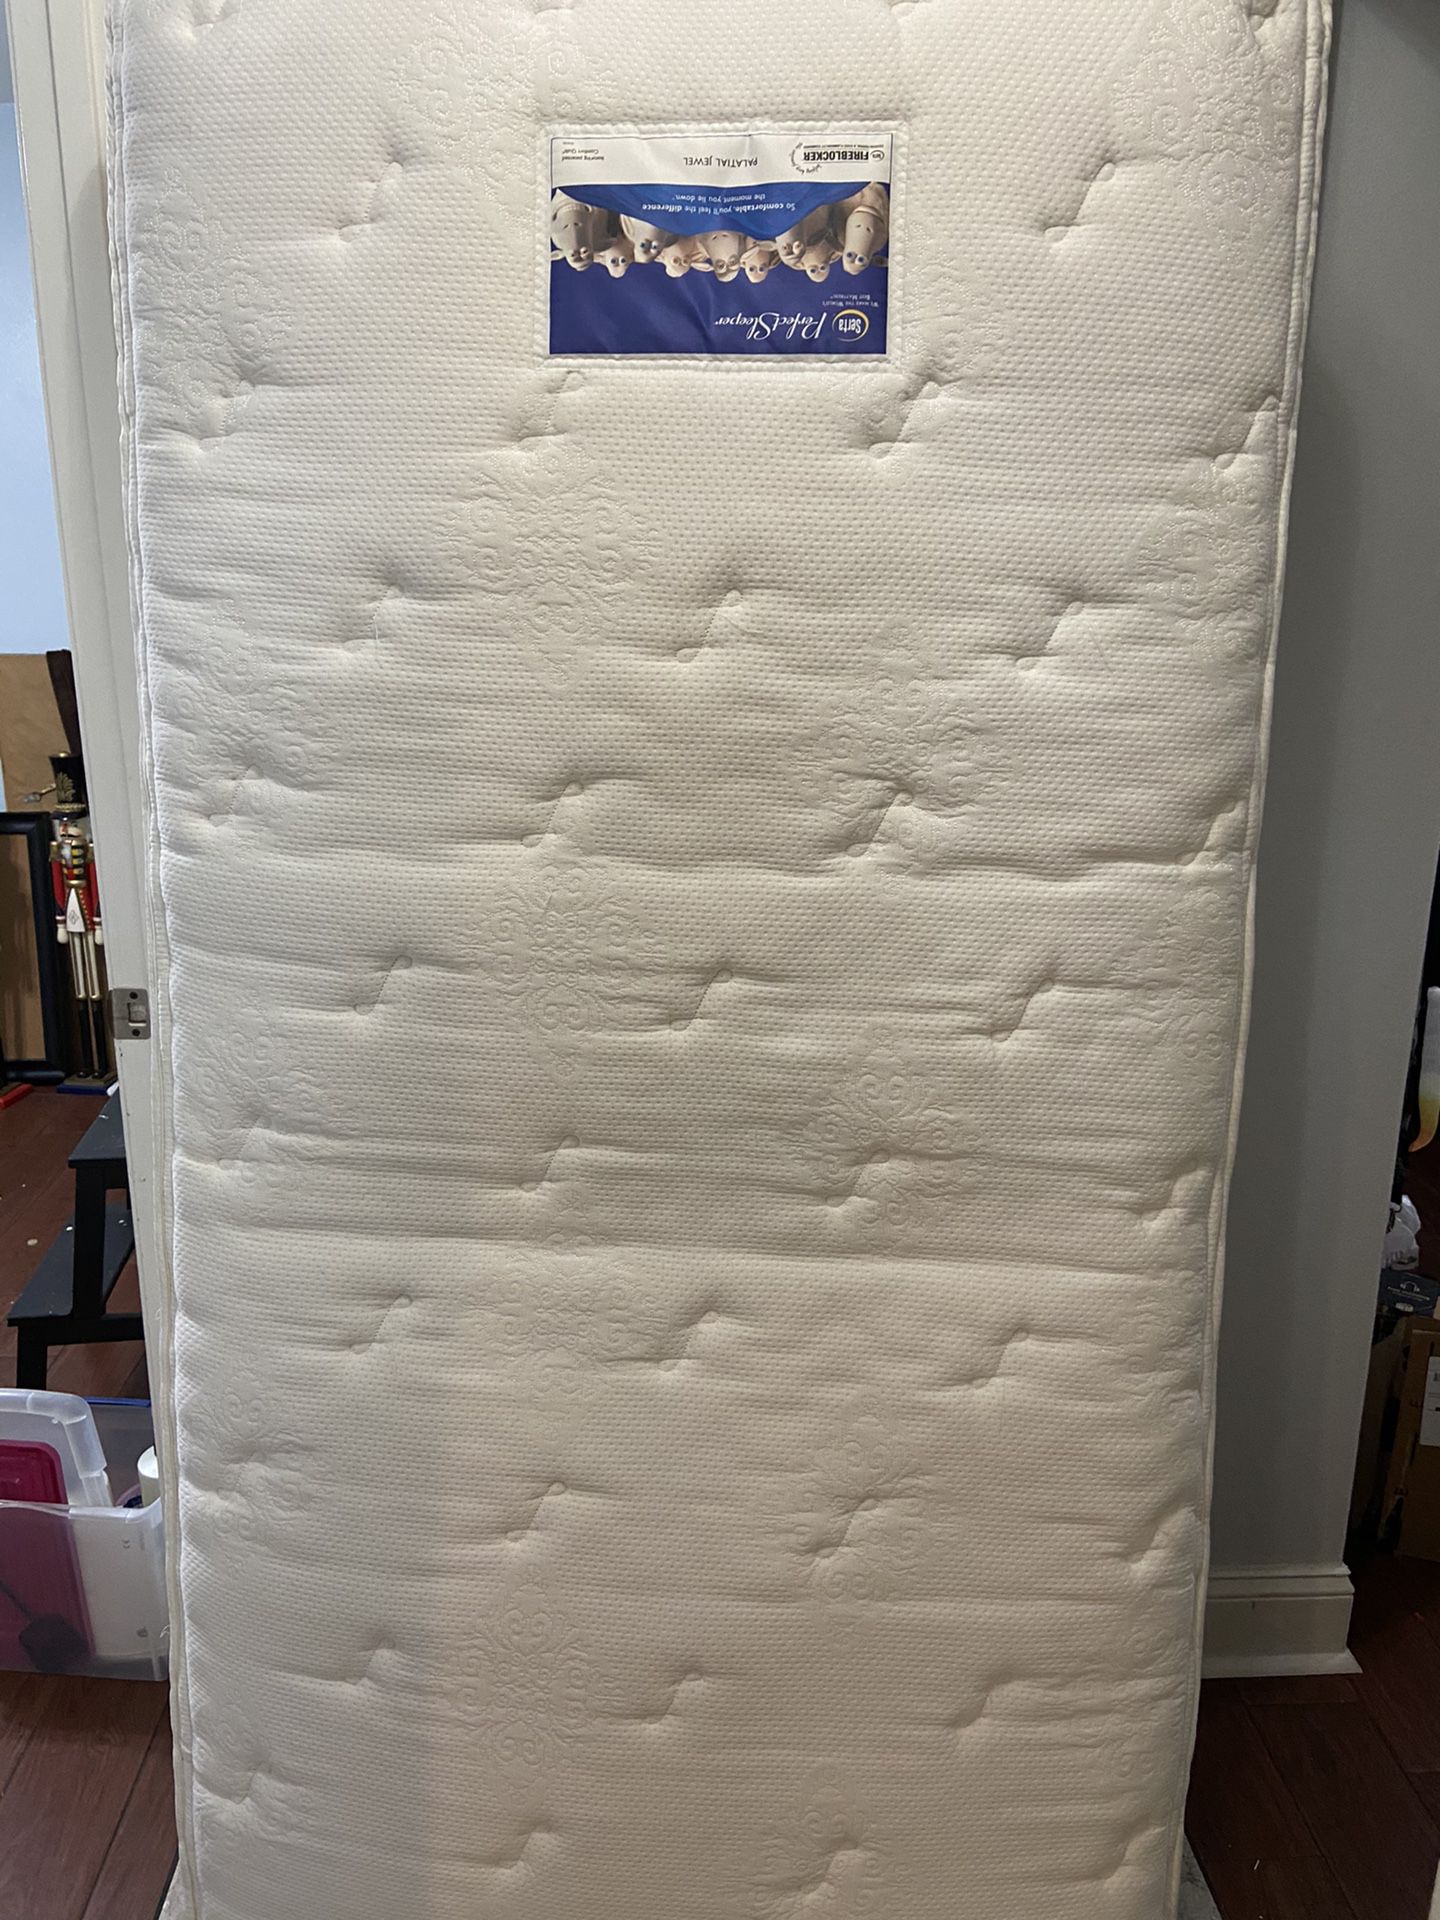 Twin size mattress